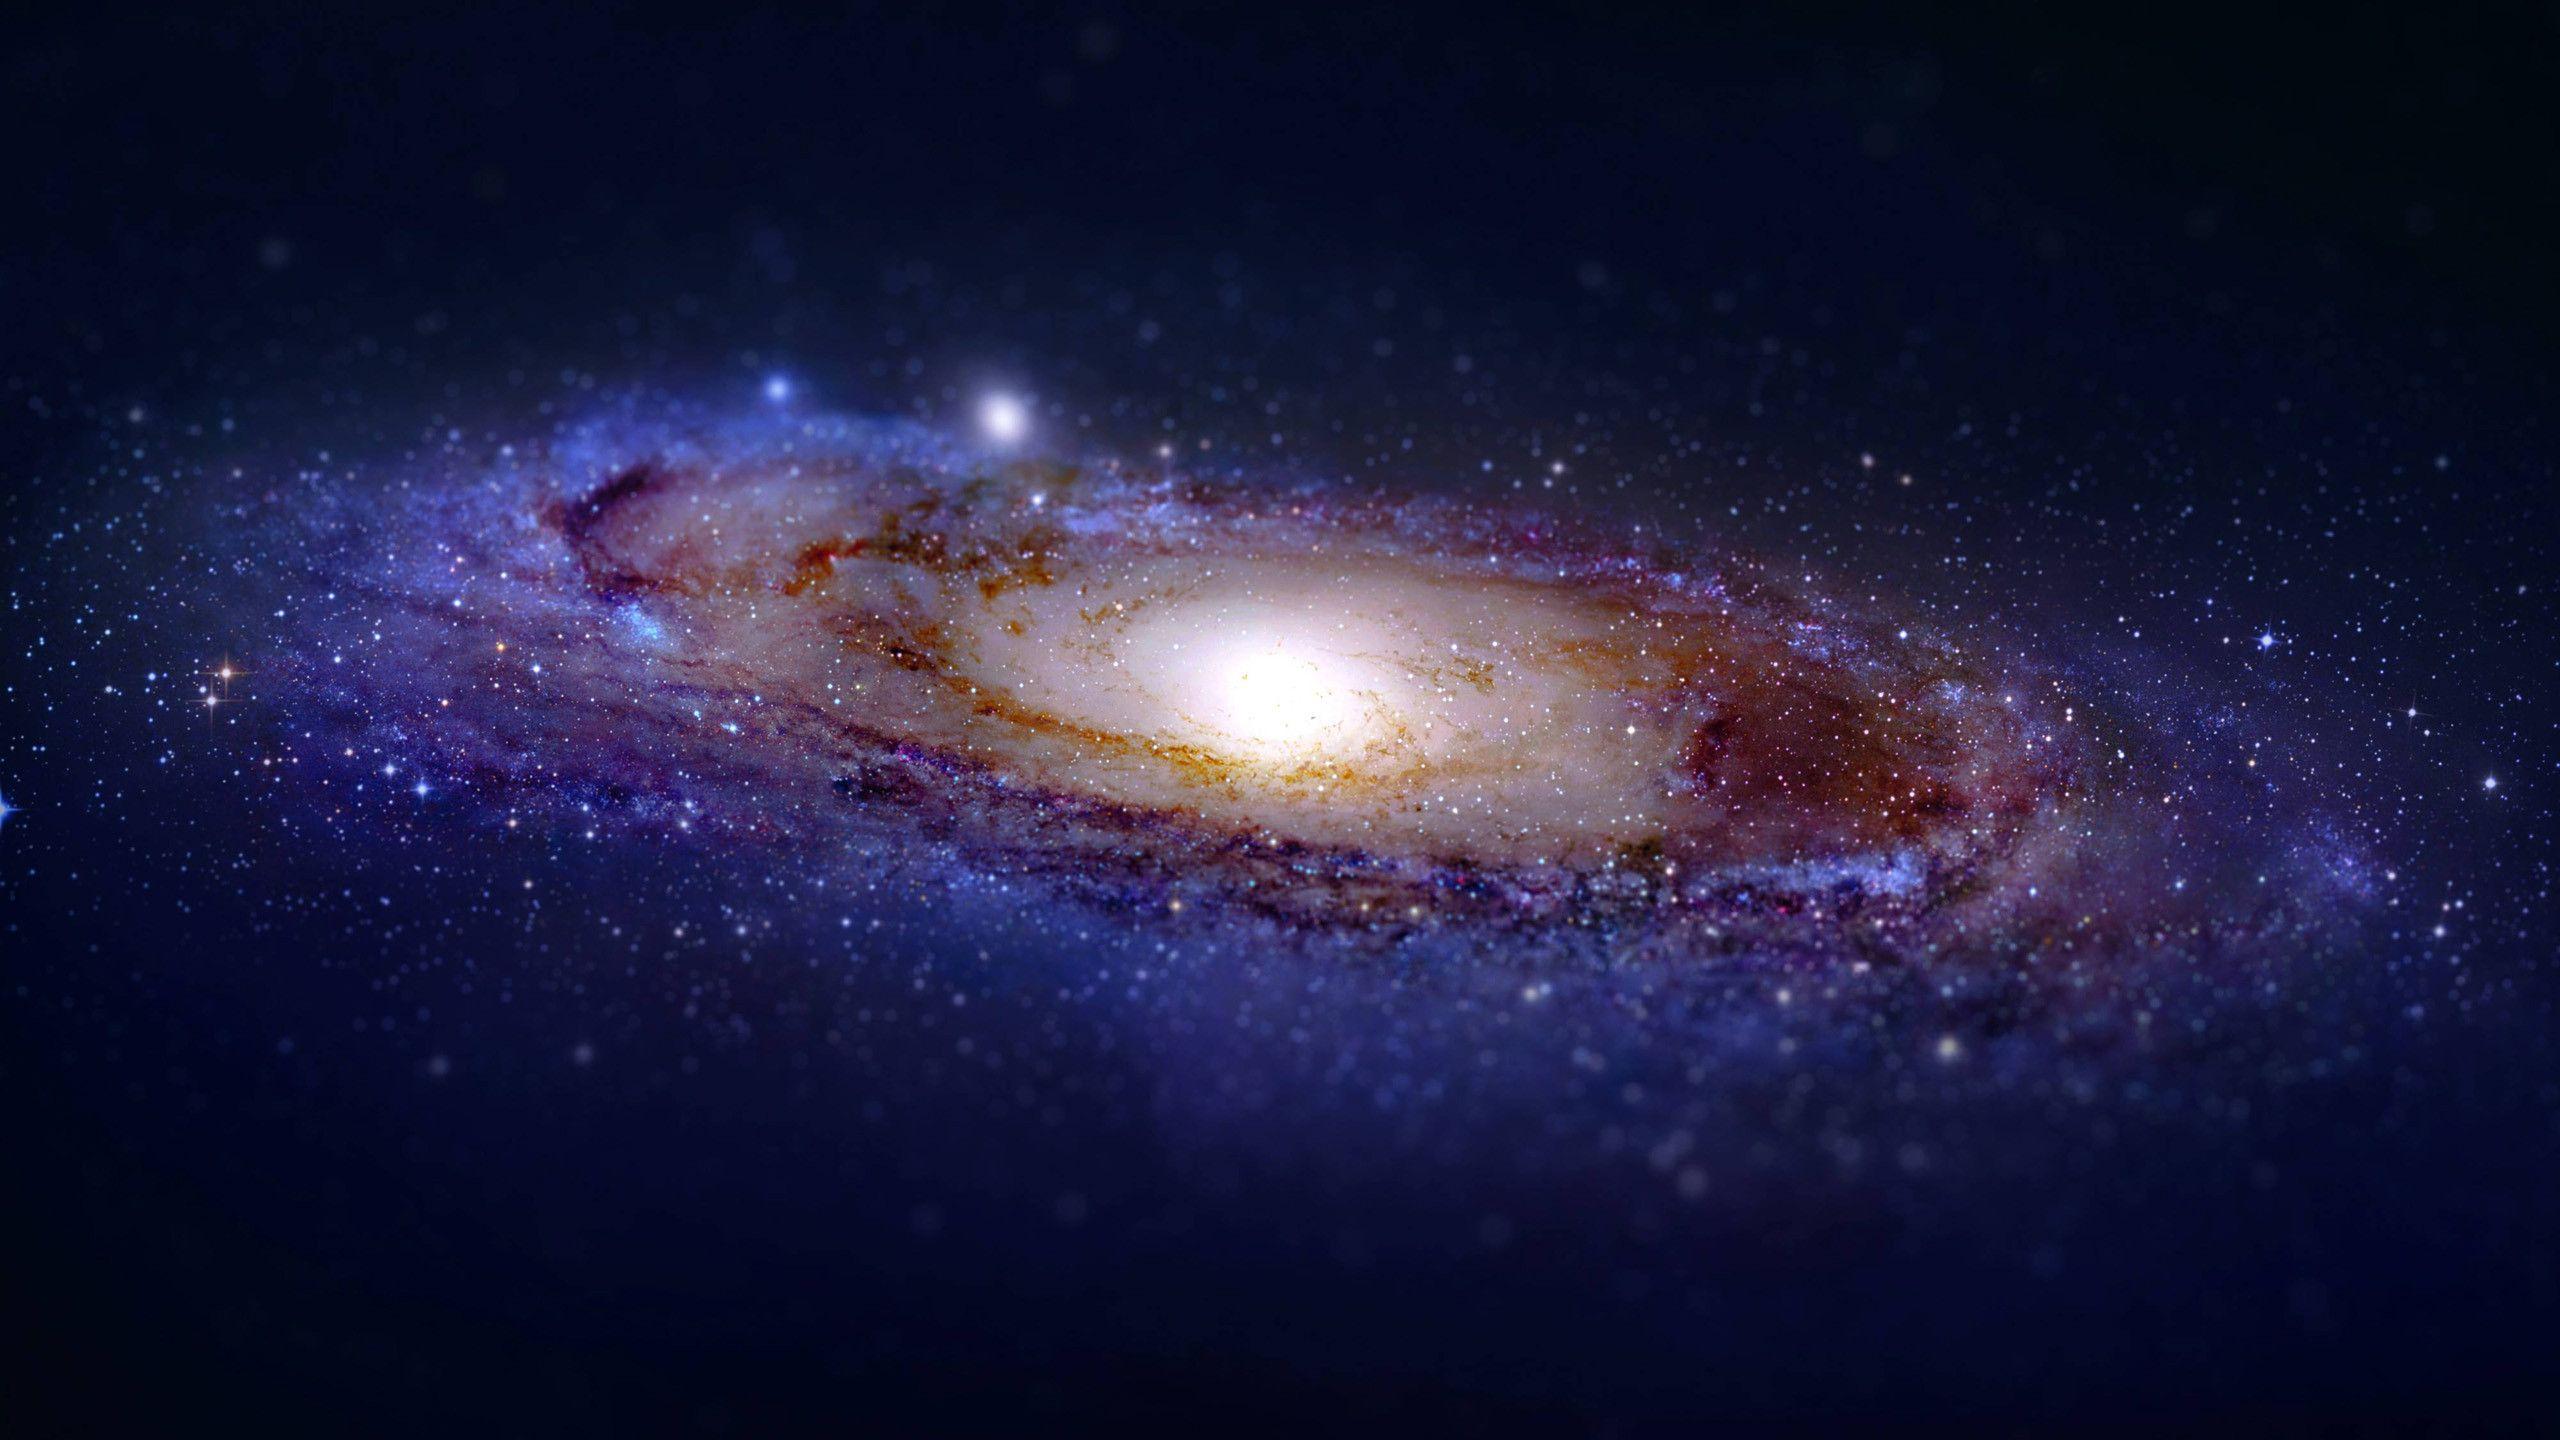 Bức ảnh không gian vô tận đầy sao rực rỡ và hoa văn bí ẩn sẽ khiến bạn bị mê hoặc ngay từ lần nhìn đầu tiên. Hãy cùng chiêm ngưỡng vẻ đẹp huyền diệu của thiên hà tại hình ảnh liên quan đến chủ đề Galaxy.